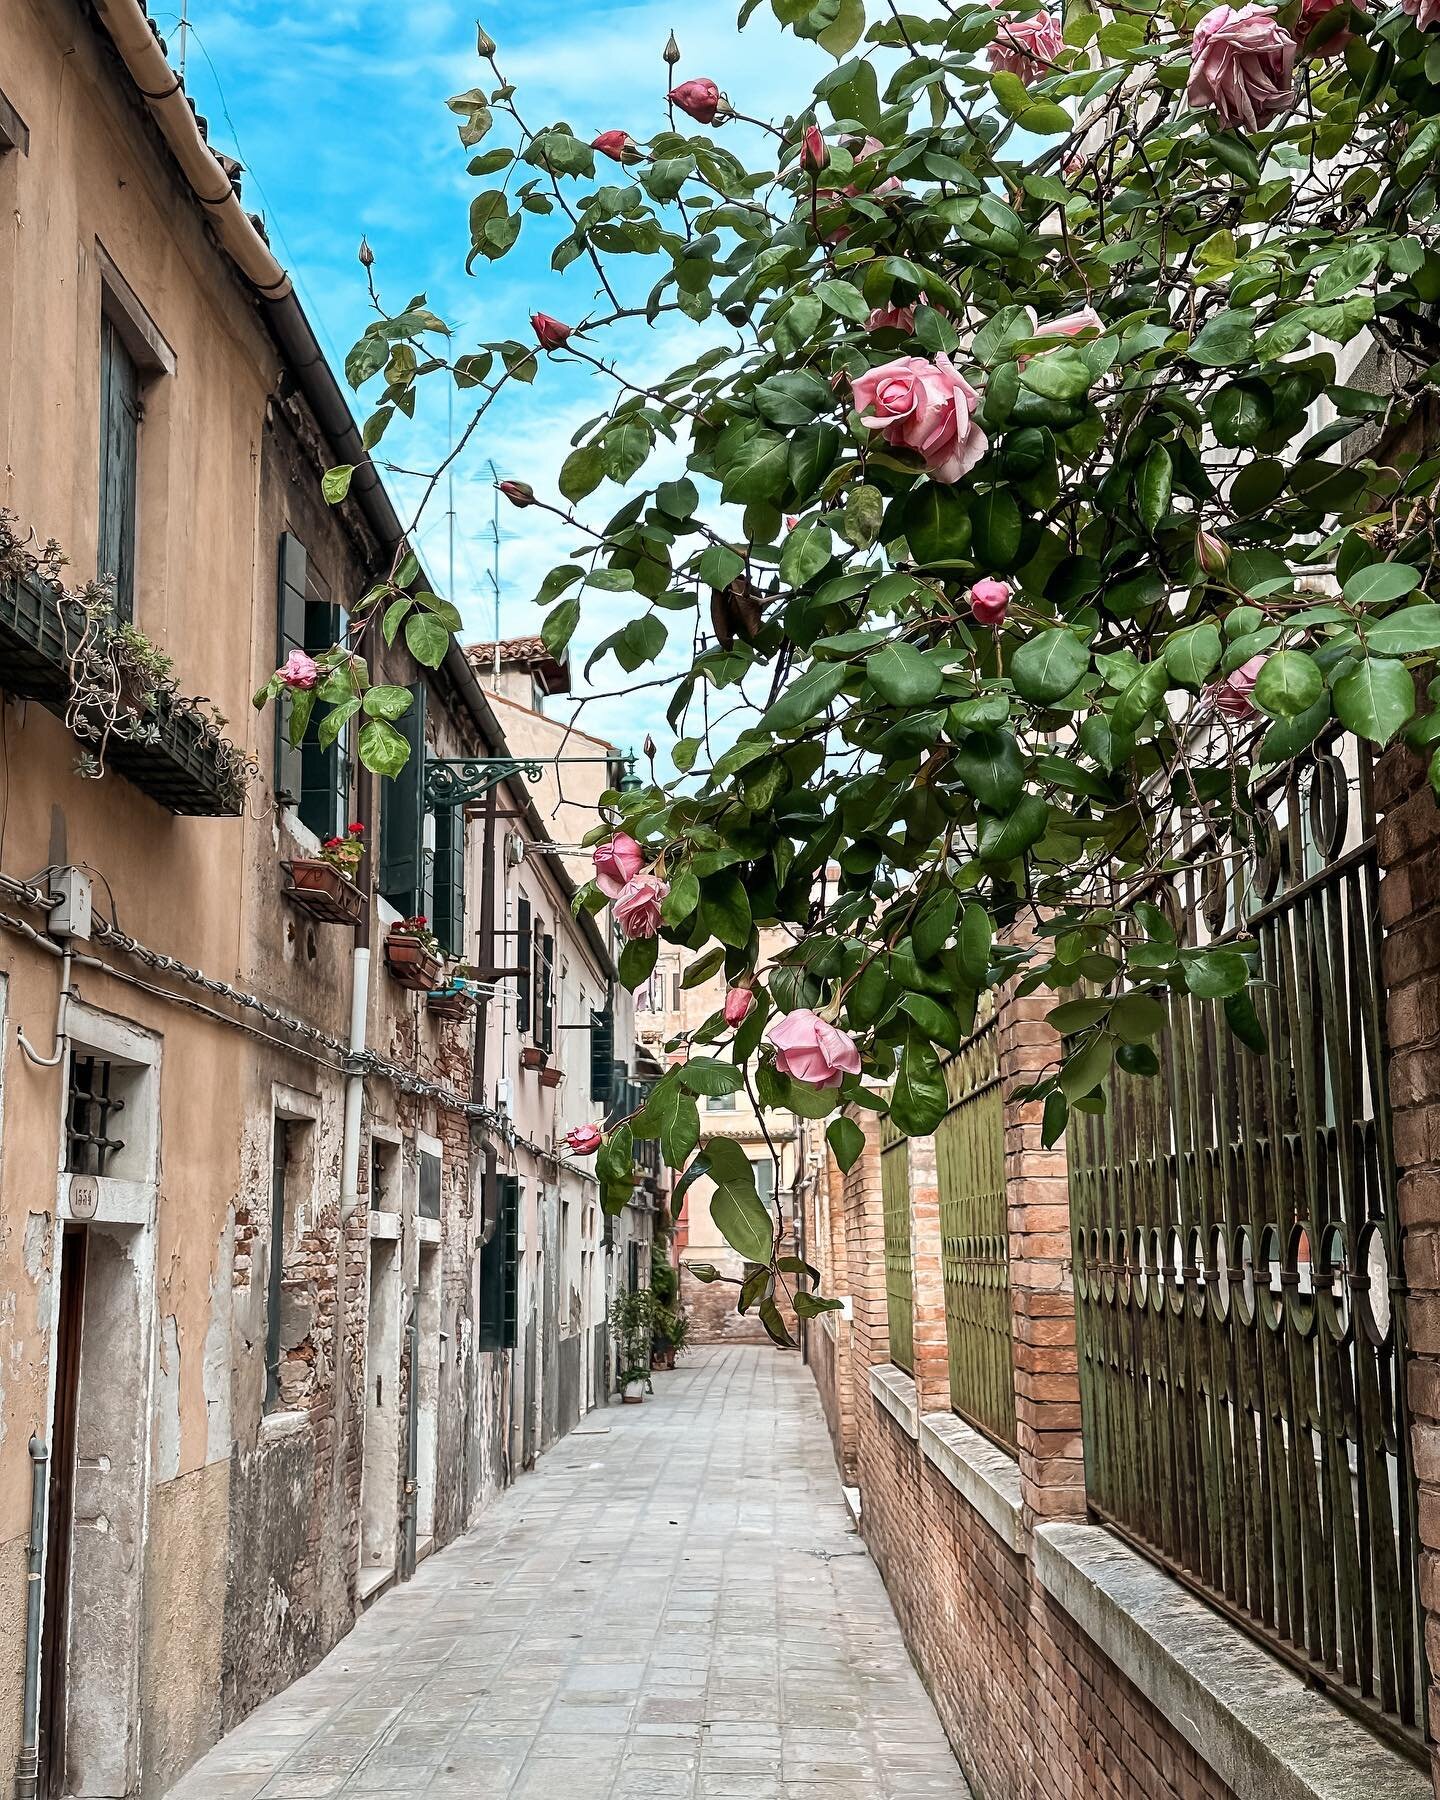 Tu Maggio doni una carezza a Venezia 🌹

#goodmorning #buongiorno #howvenicefeels #venezia #venice #veneziagram #rose #flowers #flowerpower #coltivobellezza